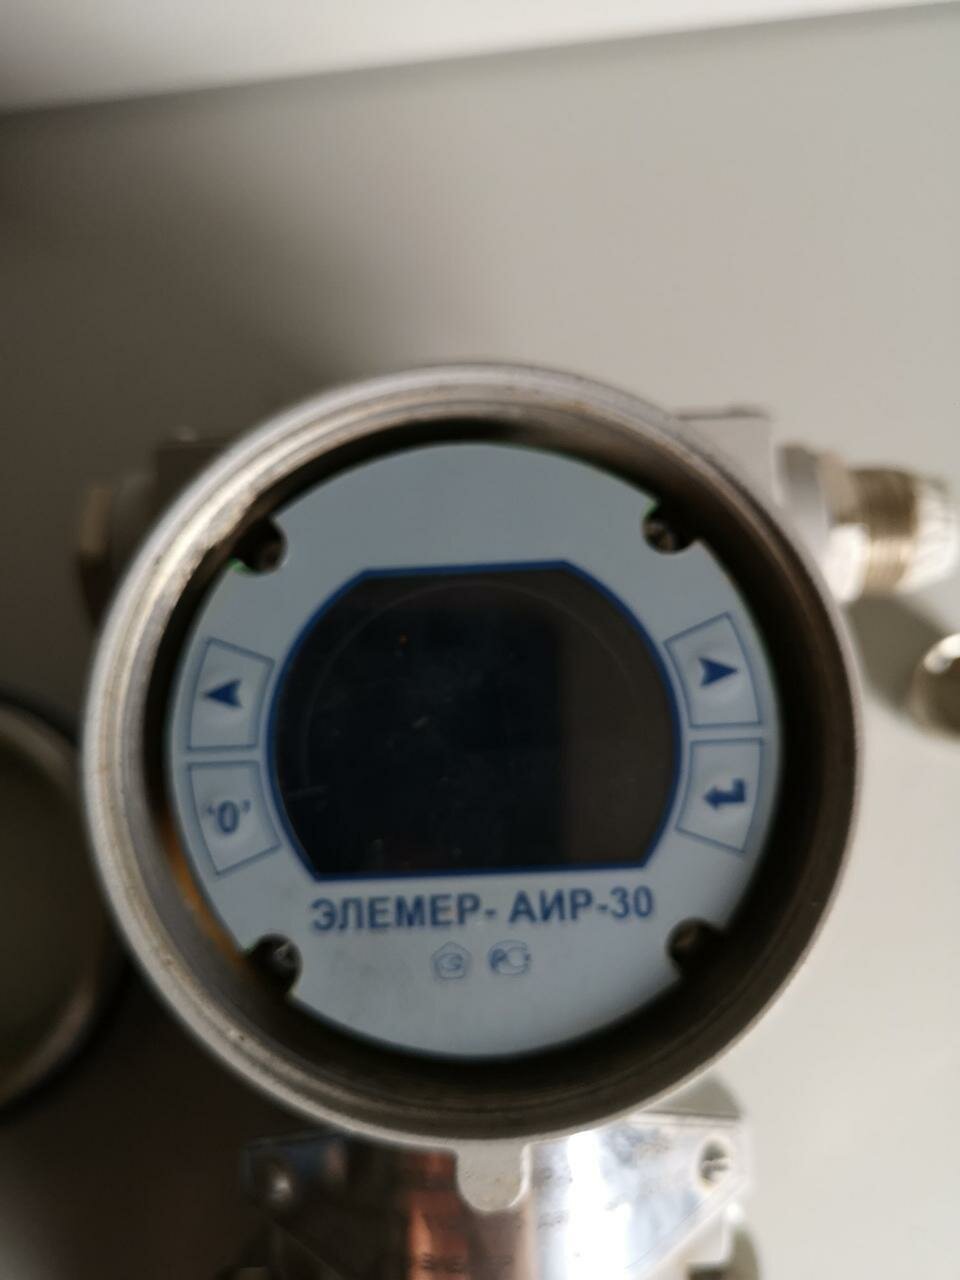 Датчик разности давления ЭЛЕМЕР-АИР-30 CD13 025МПа преобразователь дифференциального давления